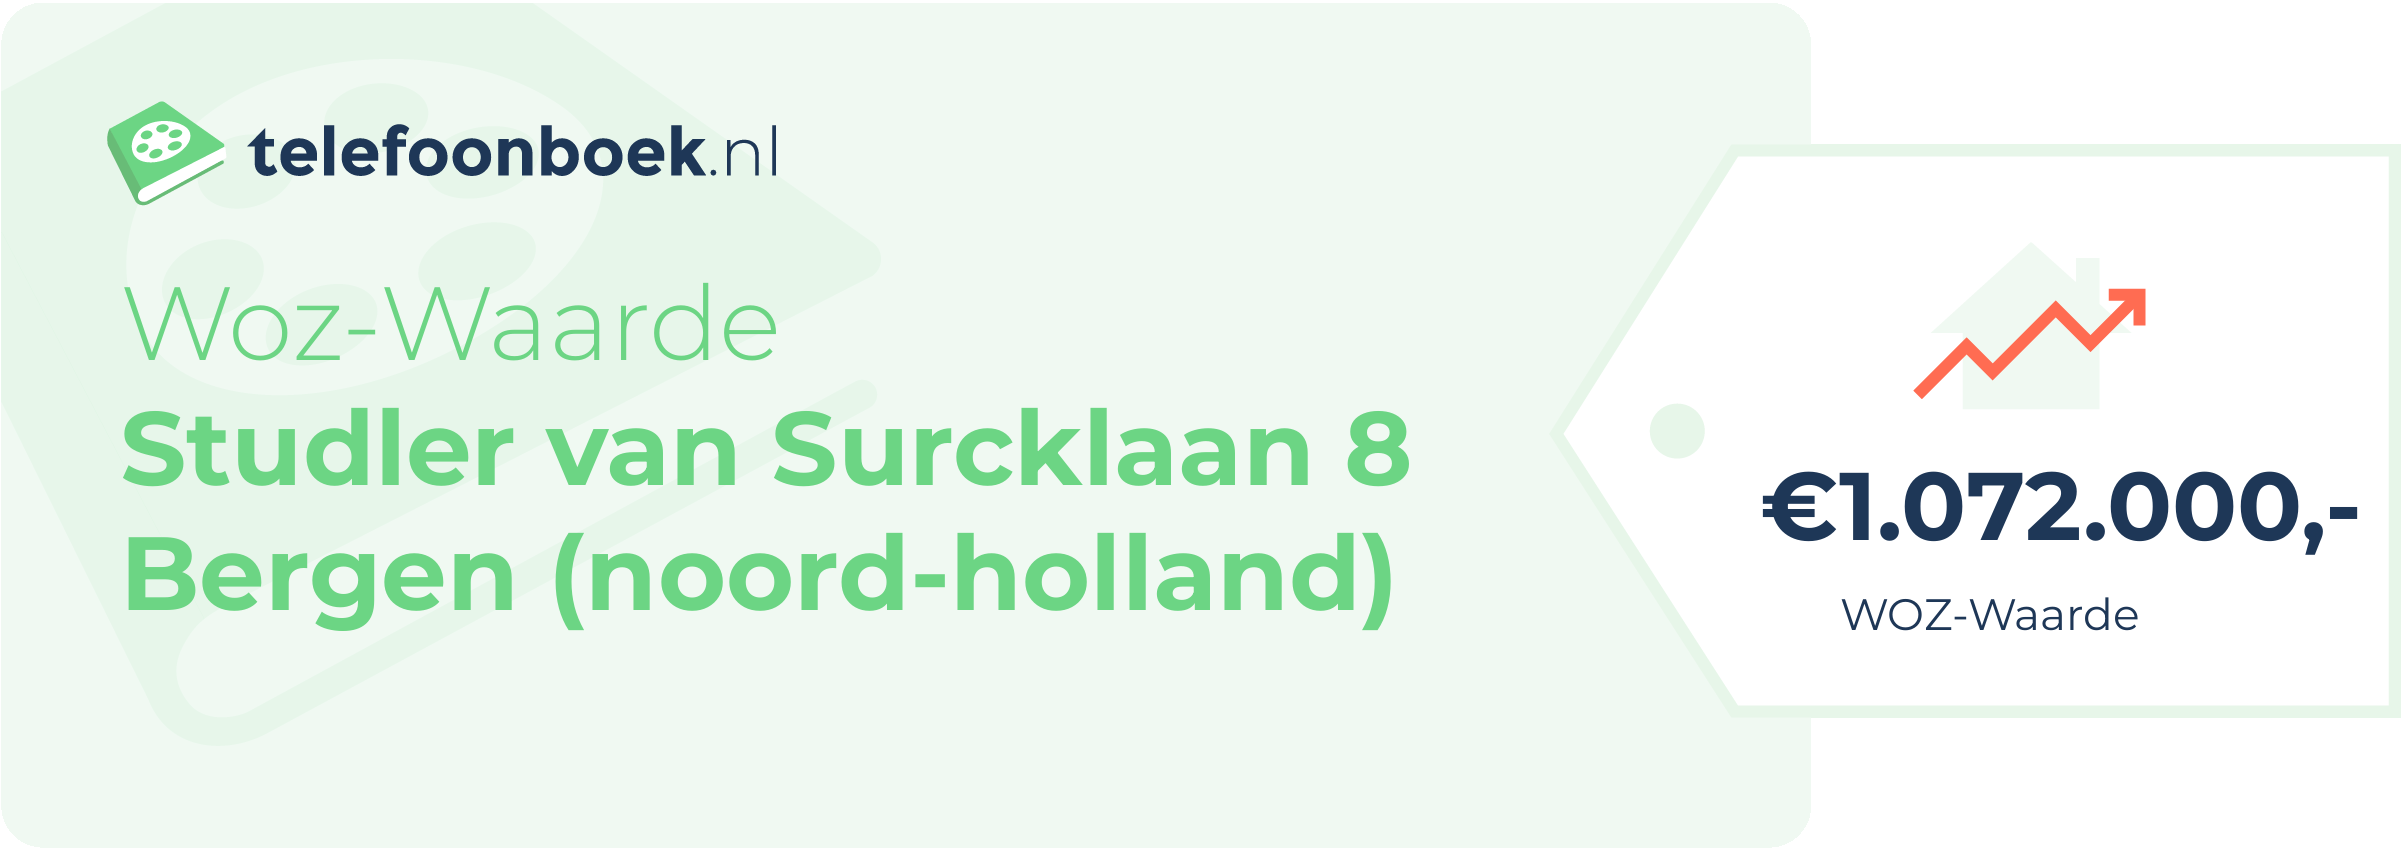 WOZ-waarde Studler Van Surcklaan 8 Bergen (Noord-Holland)